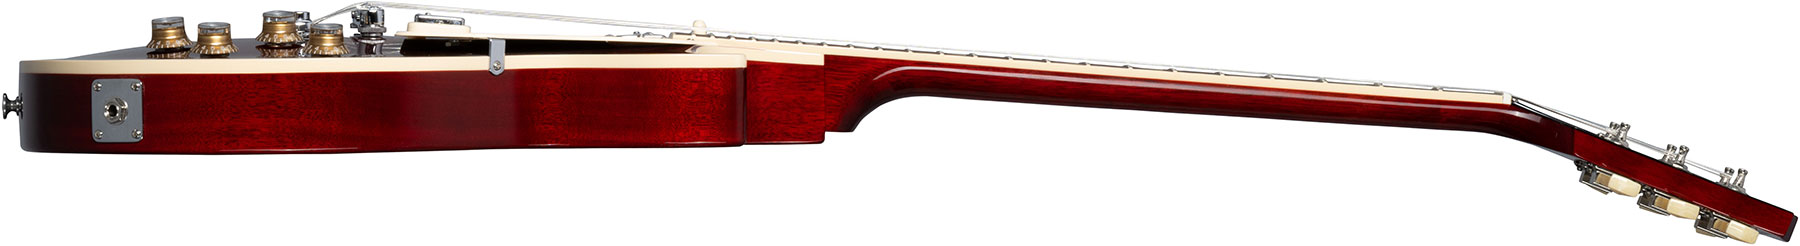 Gibson Les Paul Deluxe 70s Plain Top Original 2mh Ht Rw - Wine Red - Enkel gesneden elektrische gitaar - Variation 2